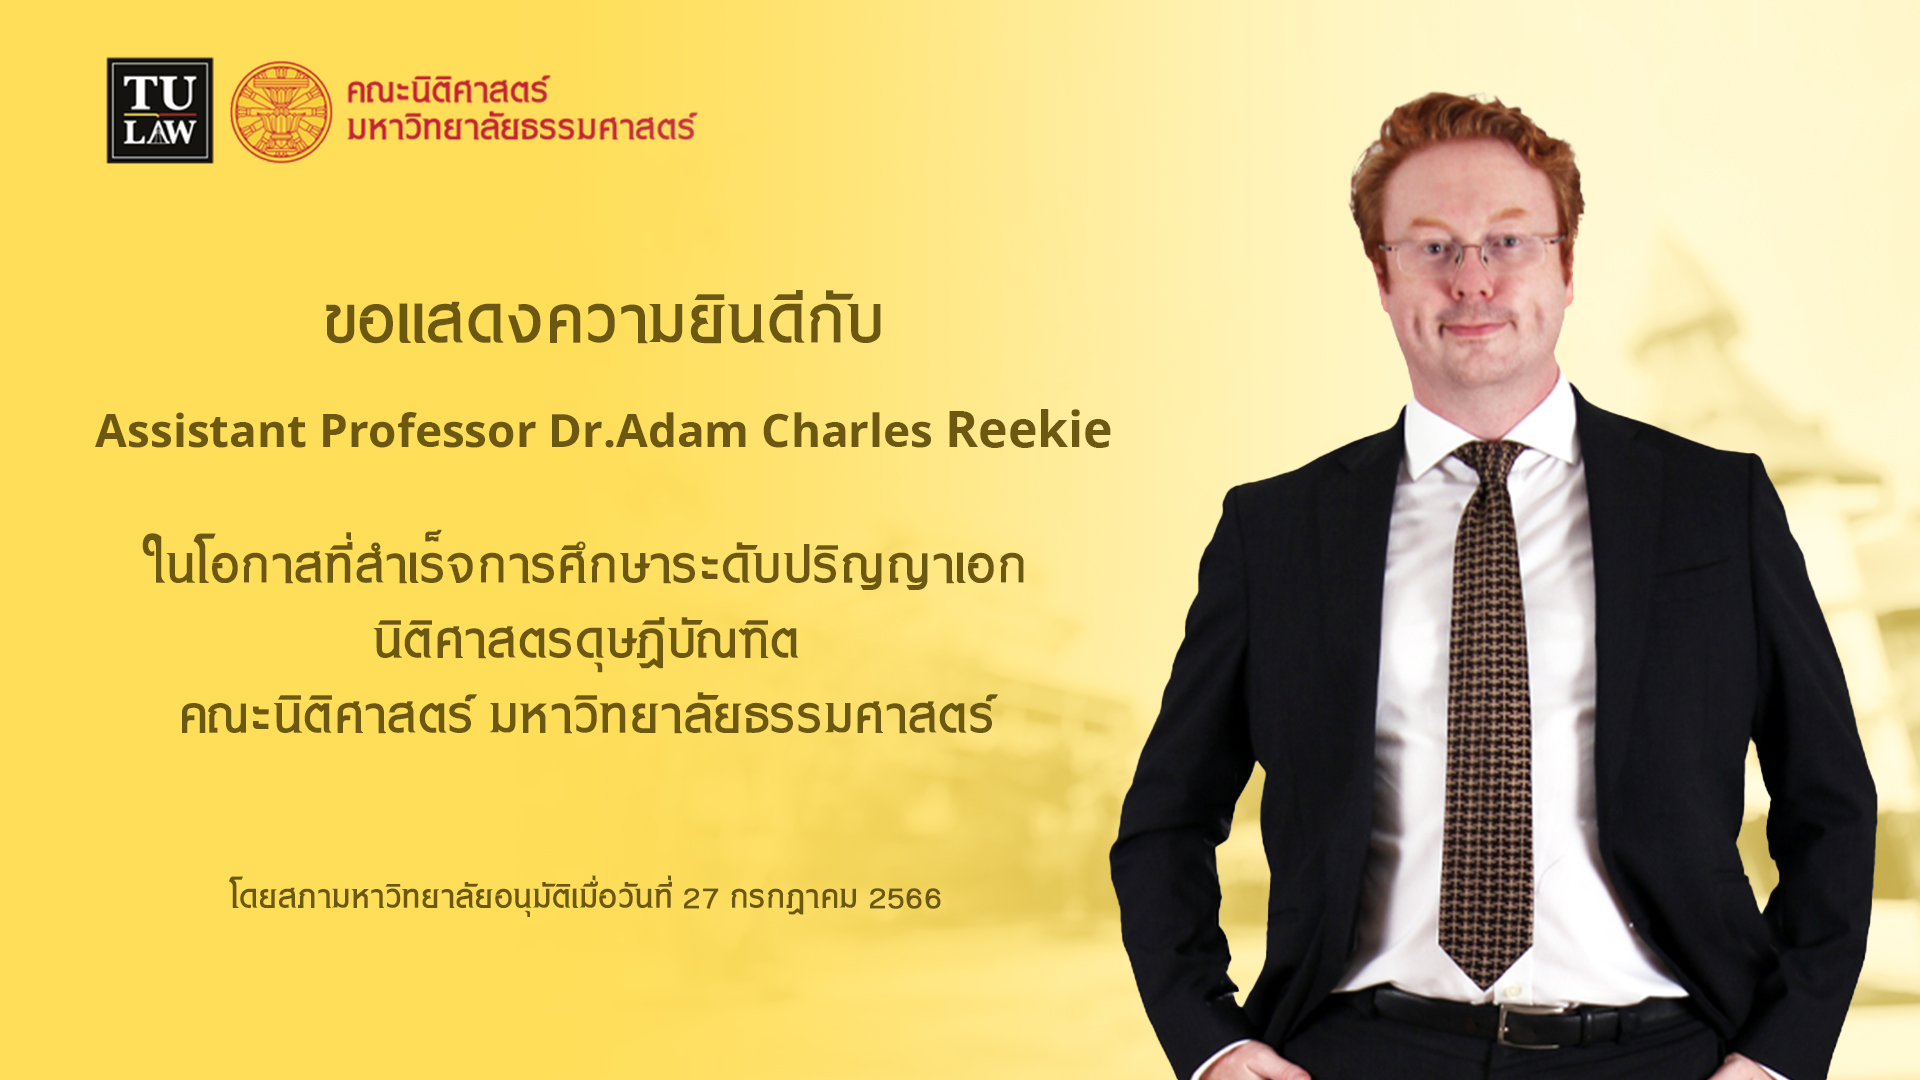 ขอแสดงความยินดีกับ Assistant Professor Dr.Adam Charles Reekie